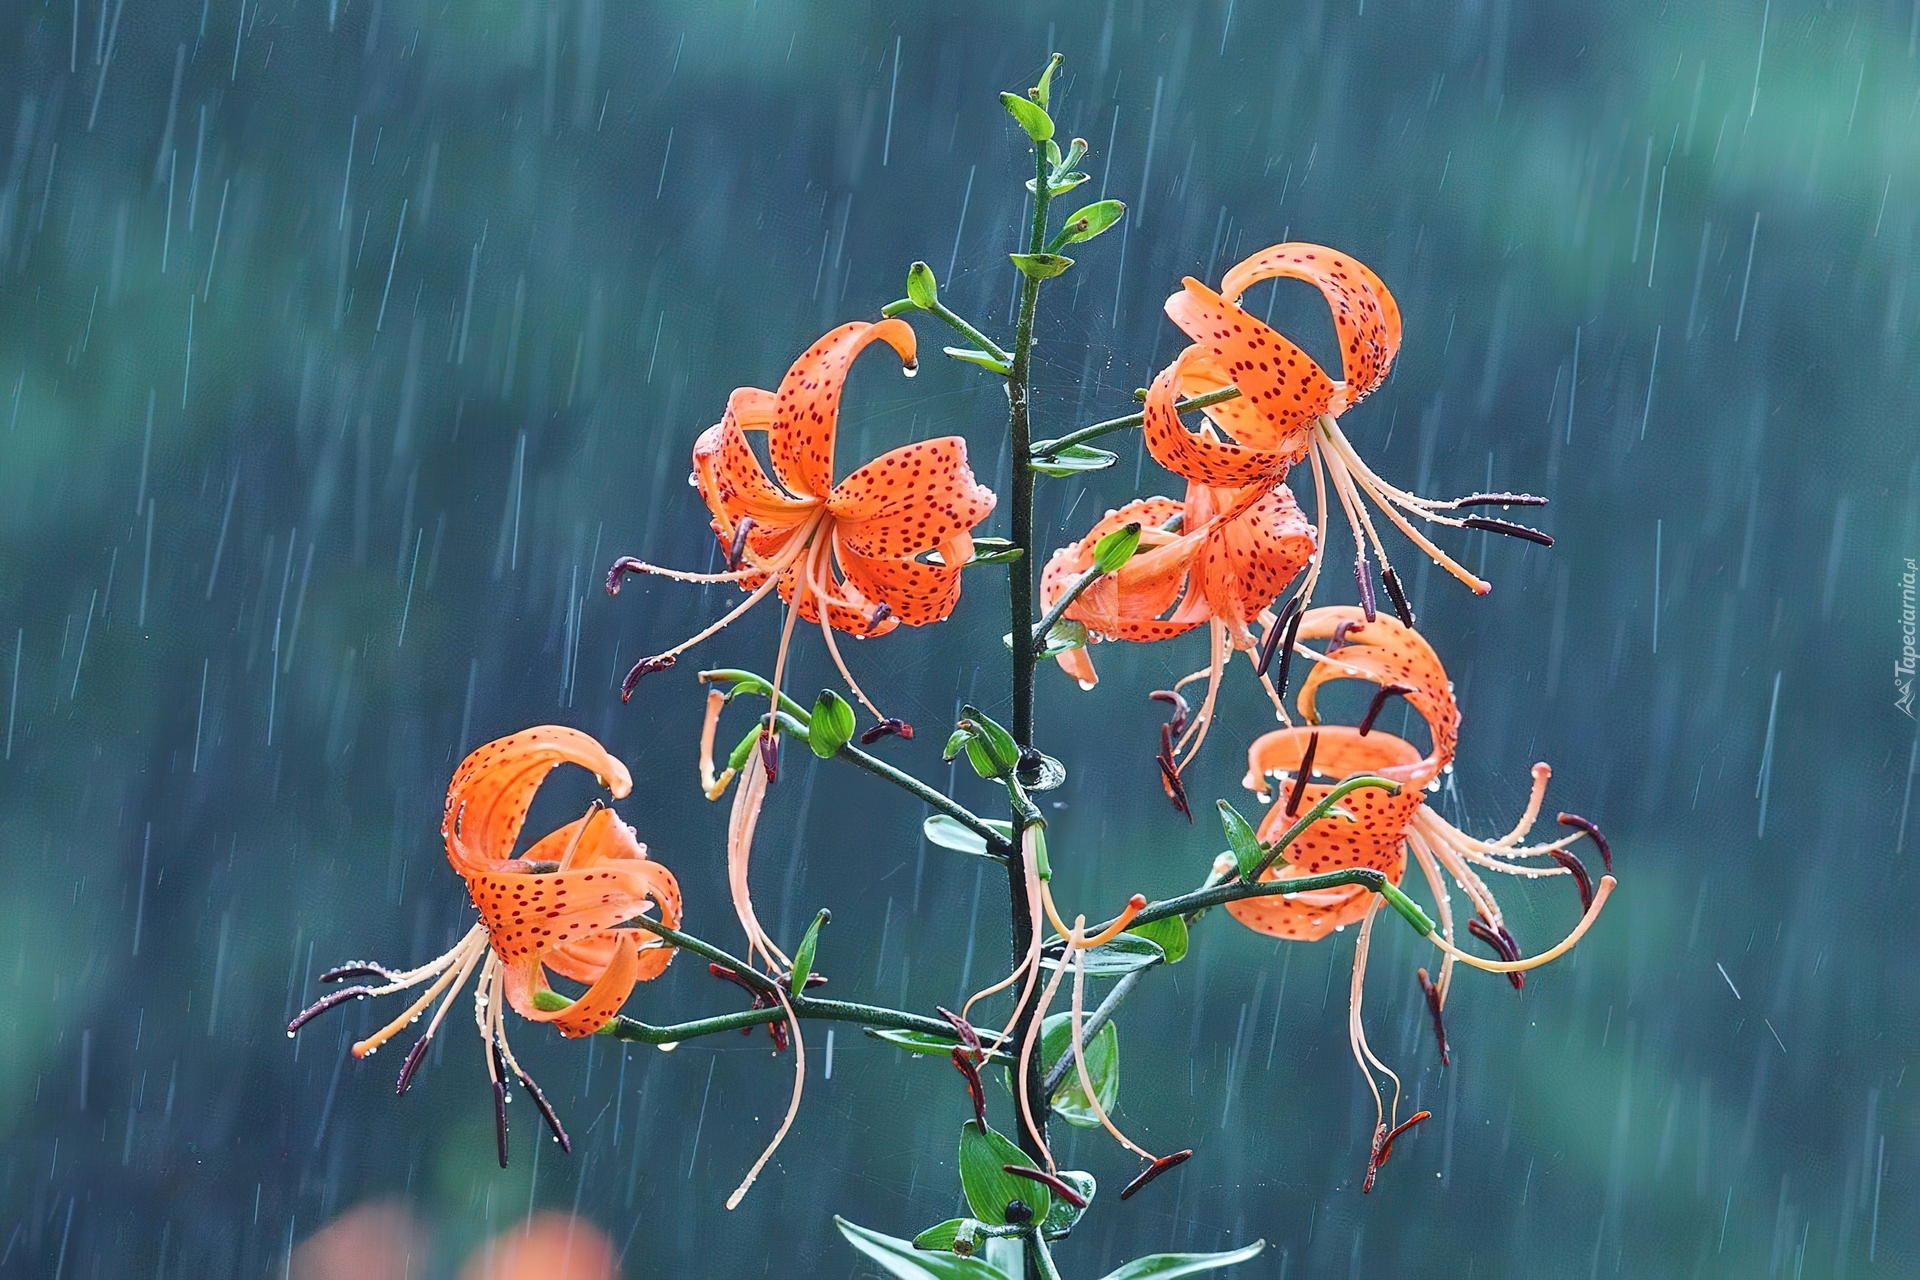 Deszcz, Lilia tygrysia